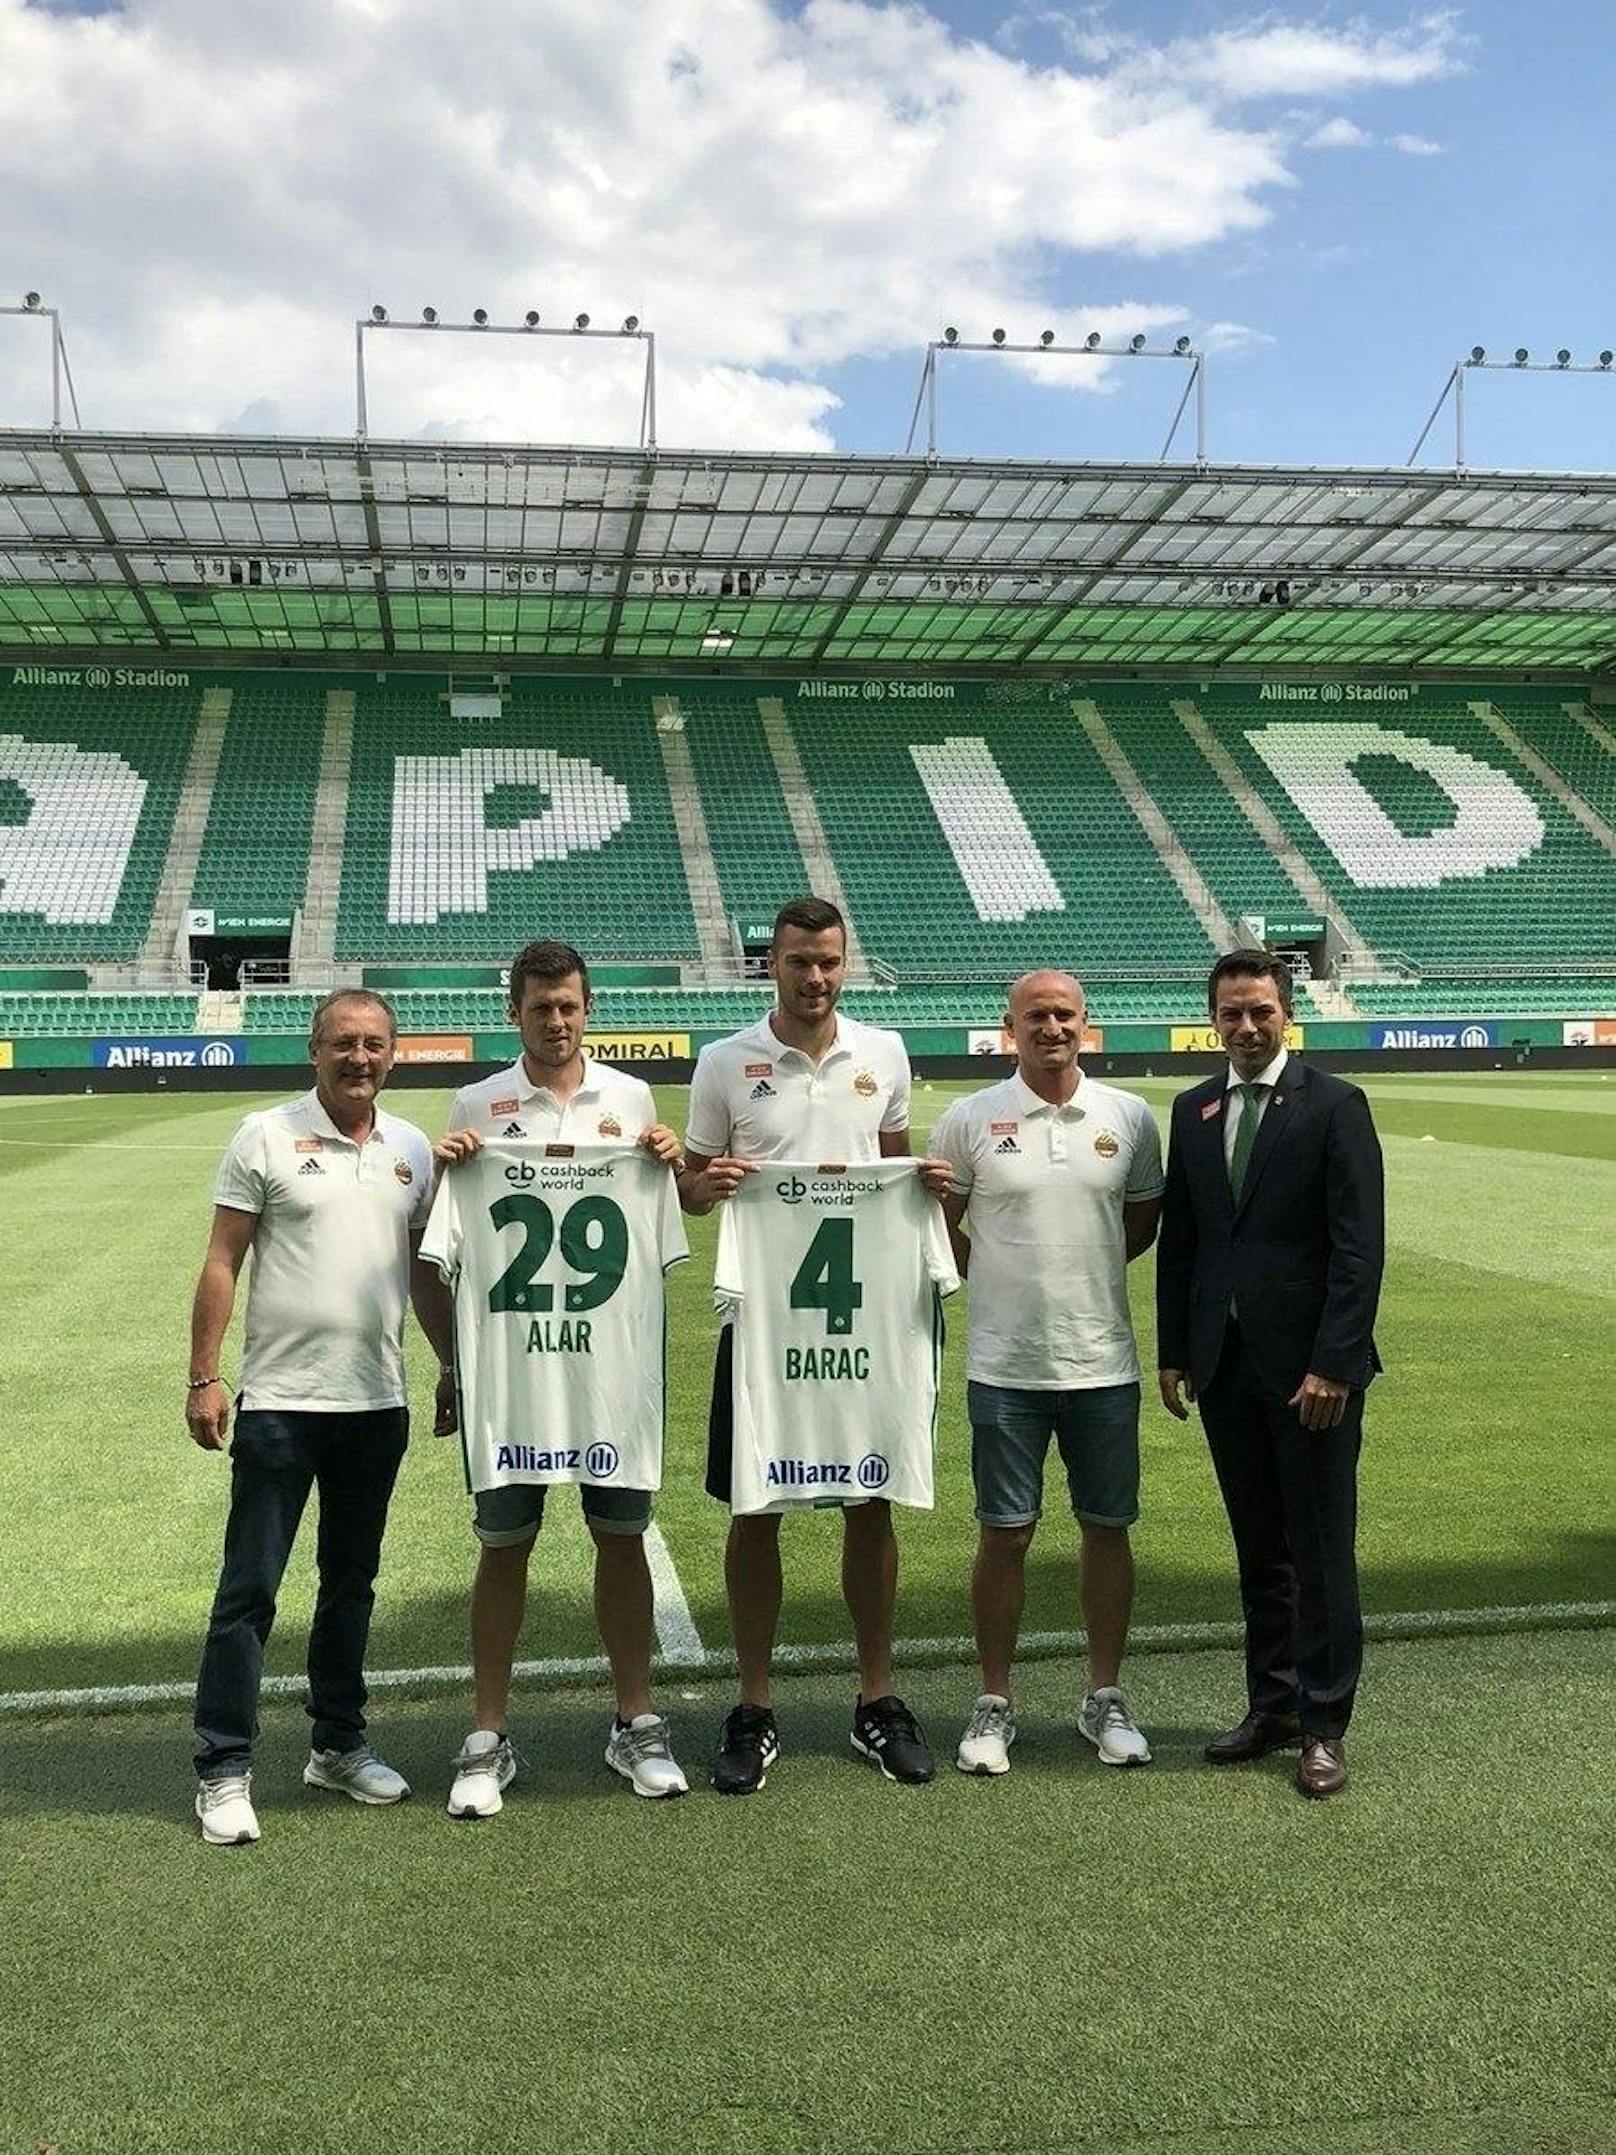 Mit der Ablöse (rund drei Millionen Euro) finanzierte Rapid gleich zwei Neue. Stürmer Deni Alar kam von Sturm Graz retour. Mateo Barac von Osijek wurde als Galvao-Nachfolger verpflichtet.